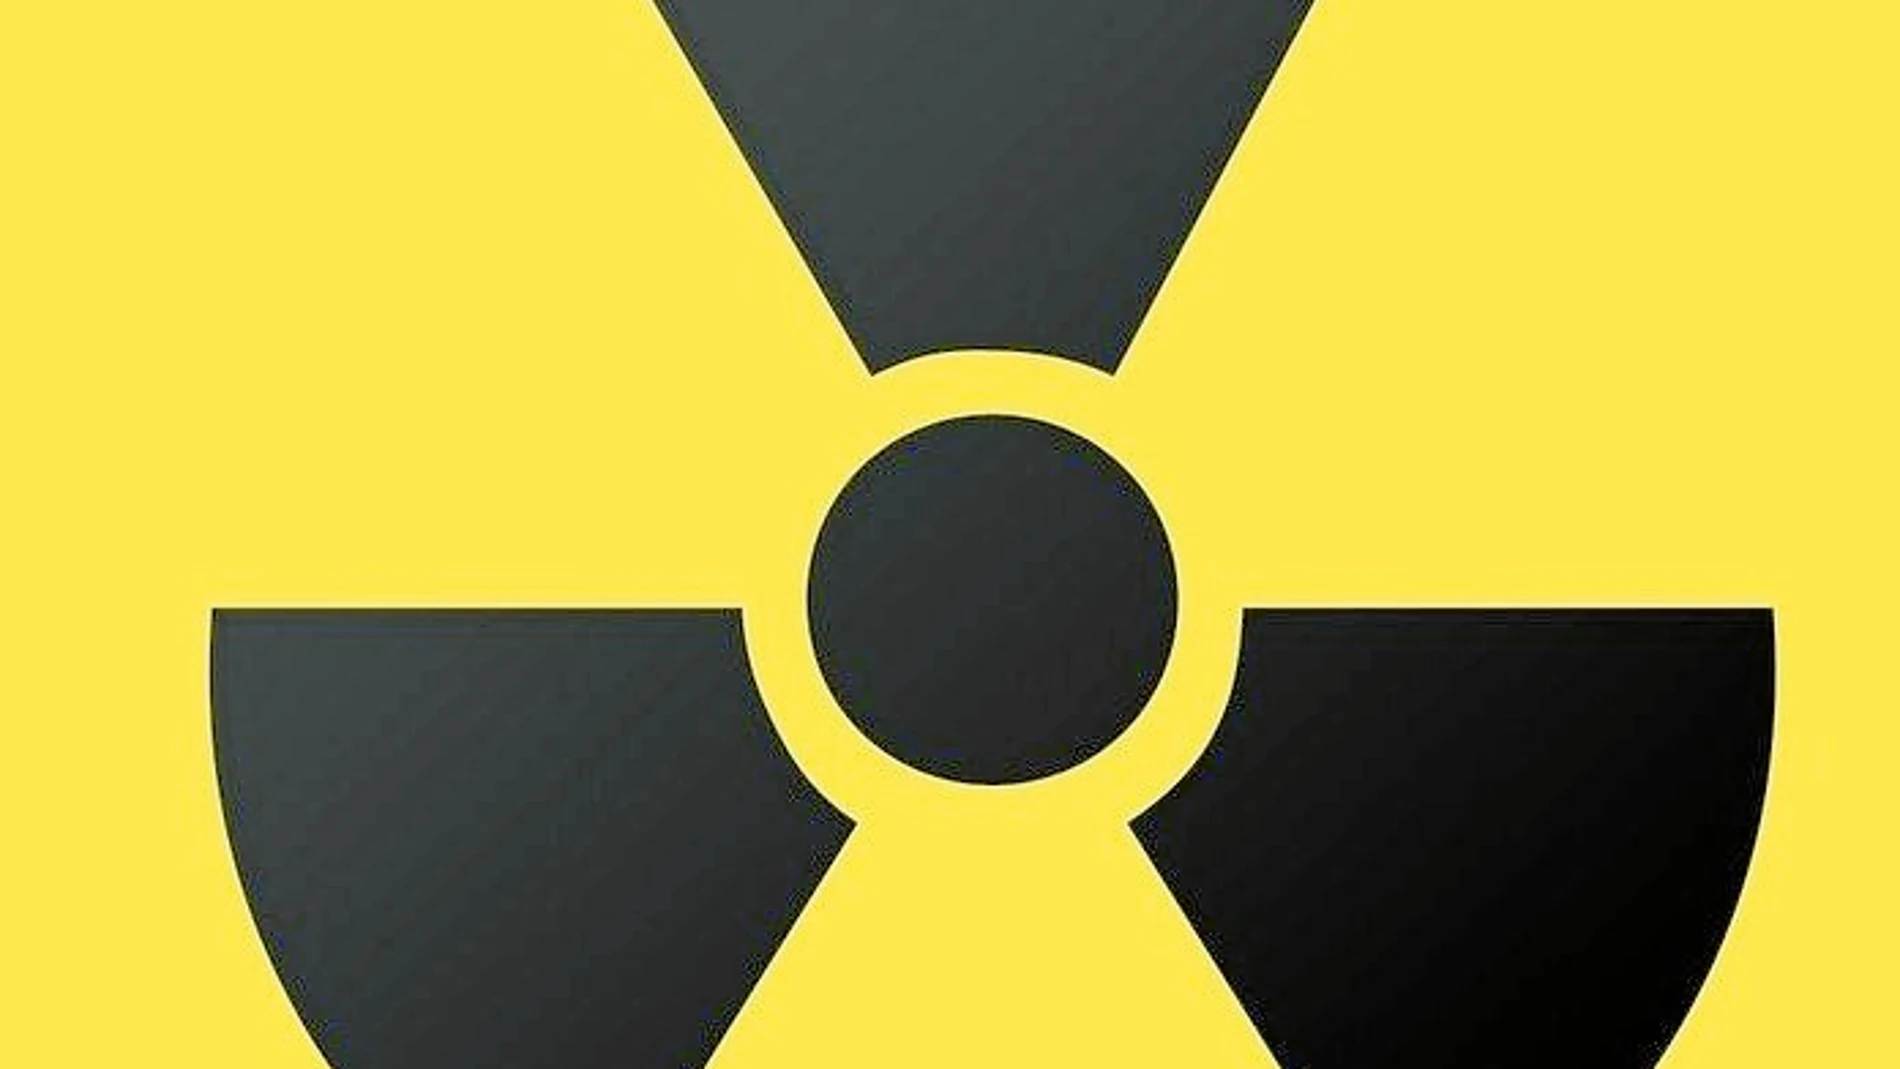 El radón es un gas incoloro, inodoro e insípido que procede del uranio de zonas graníticas